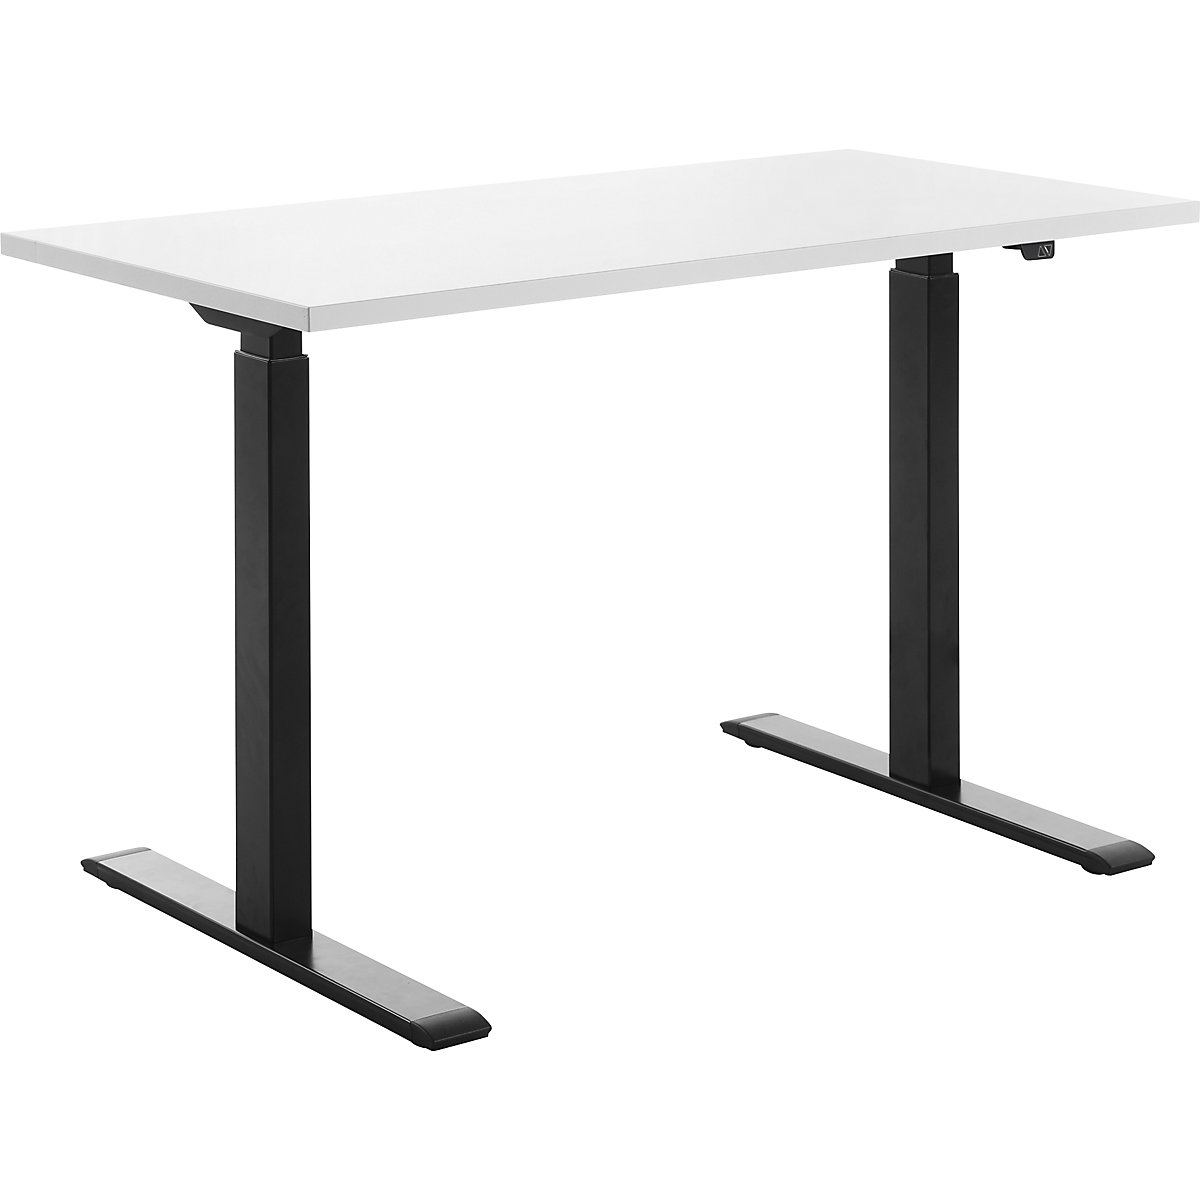 Psací stůl s elektrickým přestavováním výšky – Topstar, š x h 1200 x 600 mm, deska bílá, podstavec černá